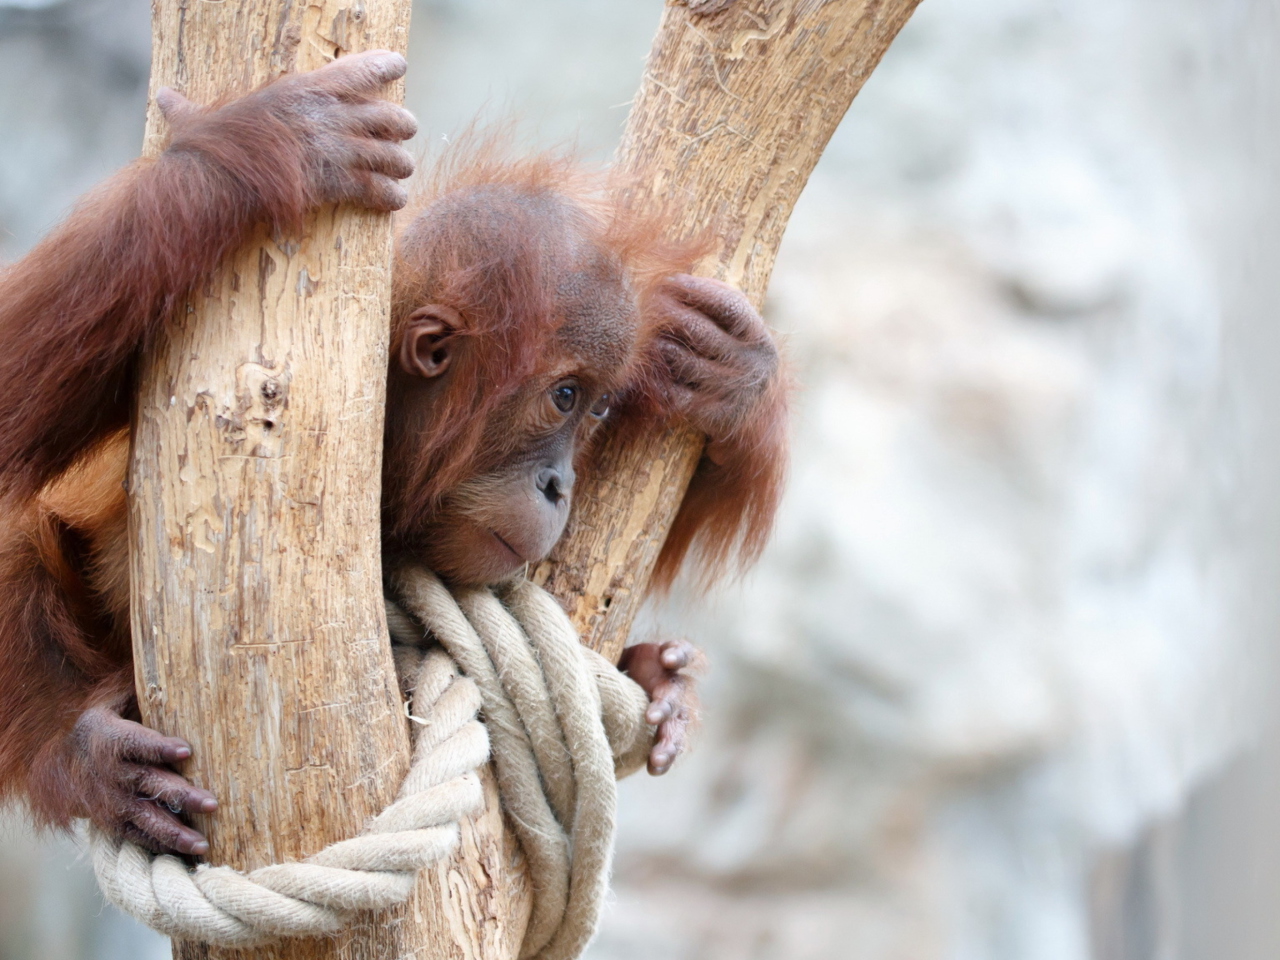 Cute Little Monkey In Zoo wallpaper 1280x960